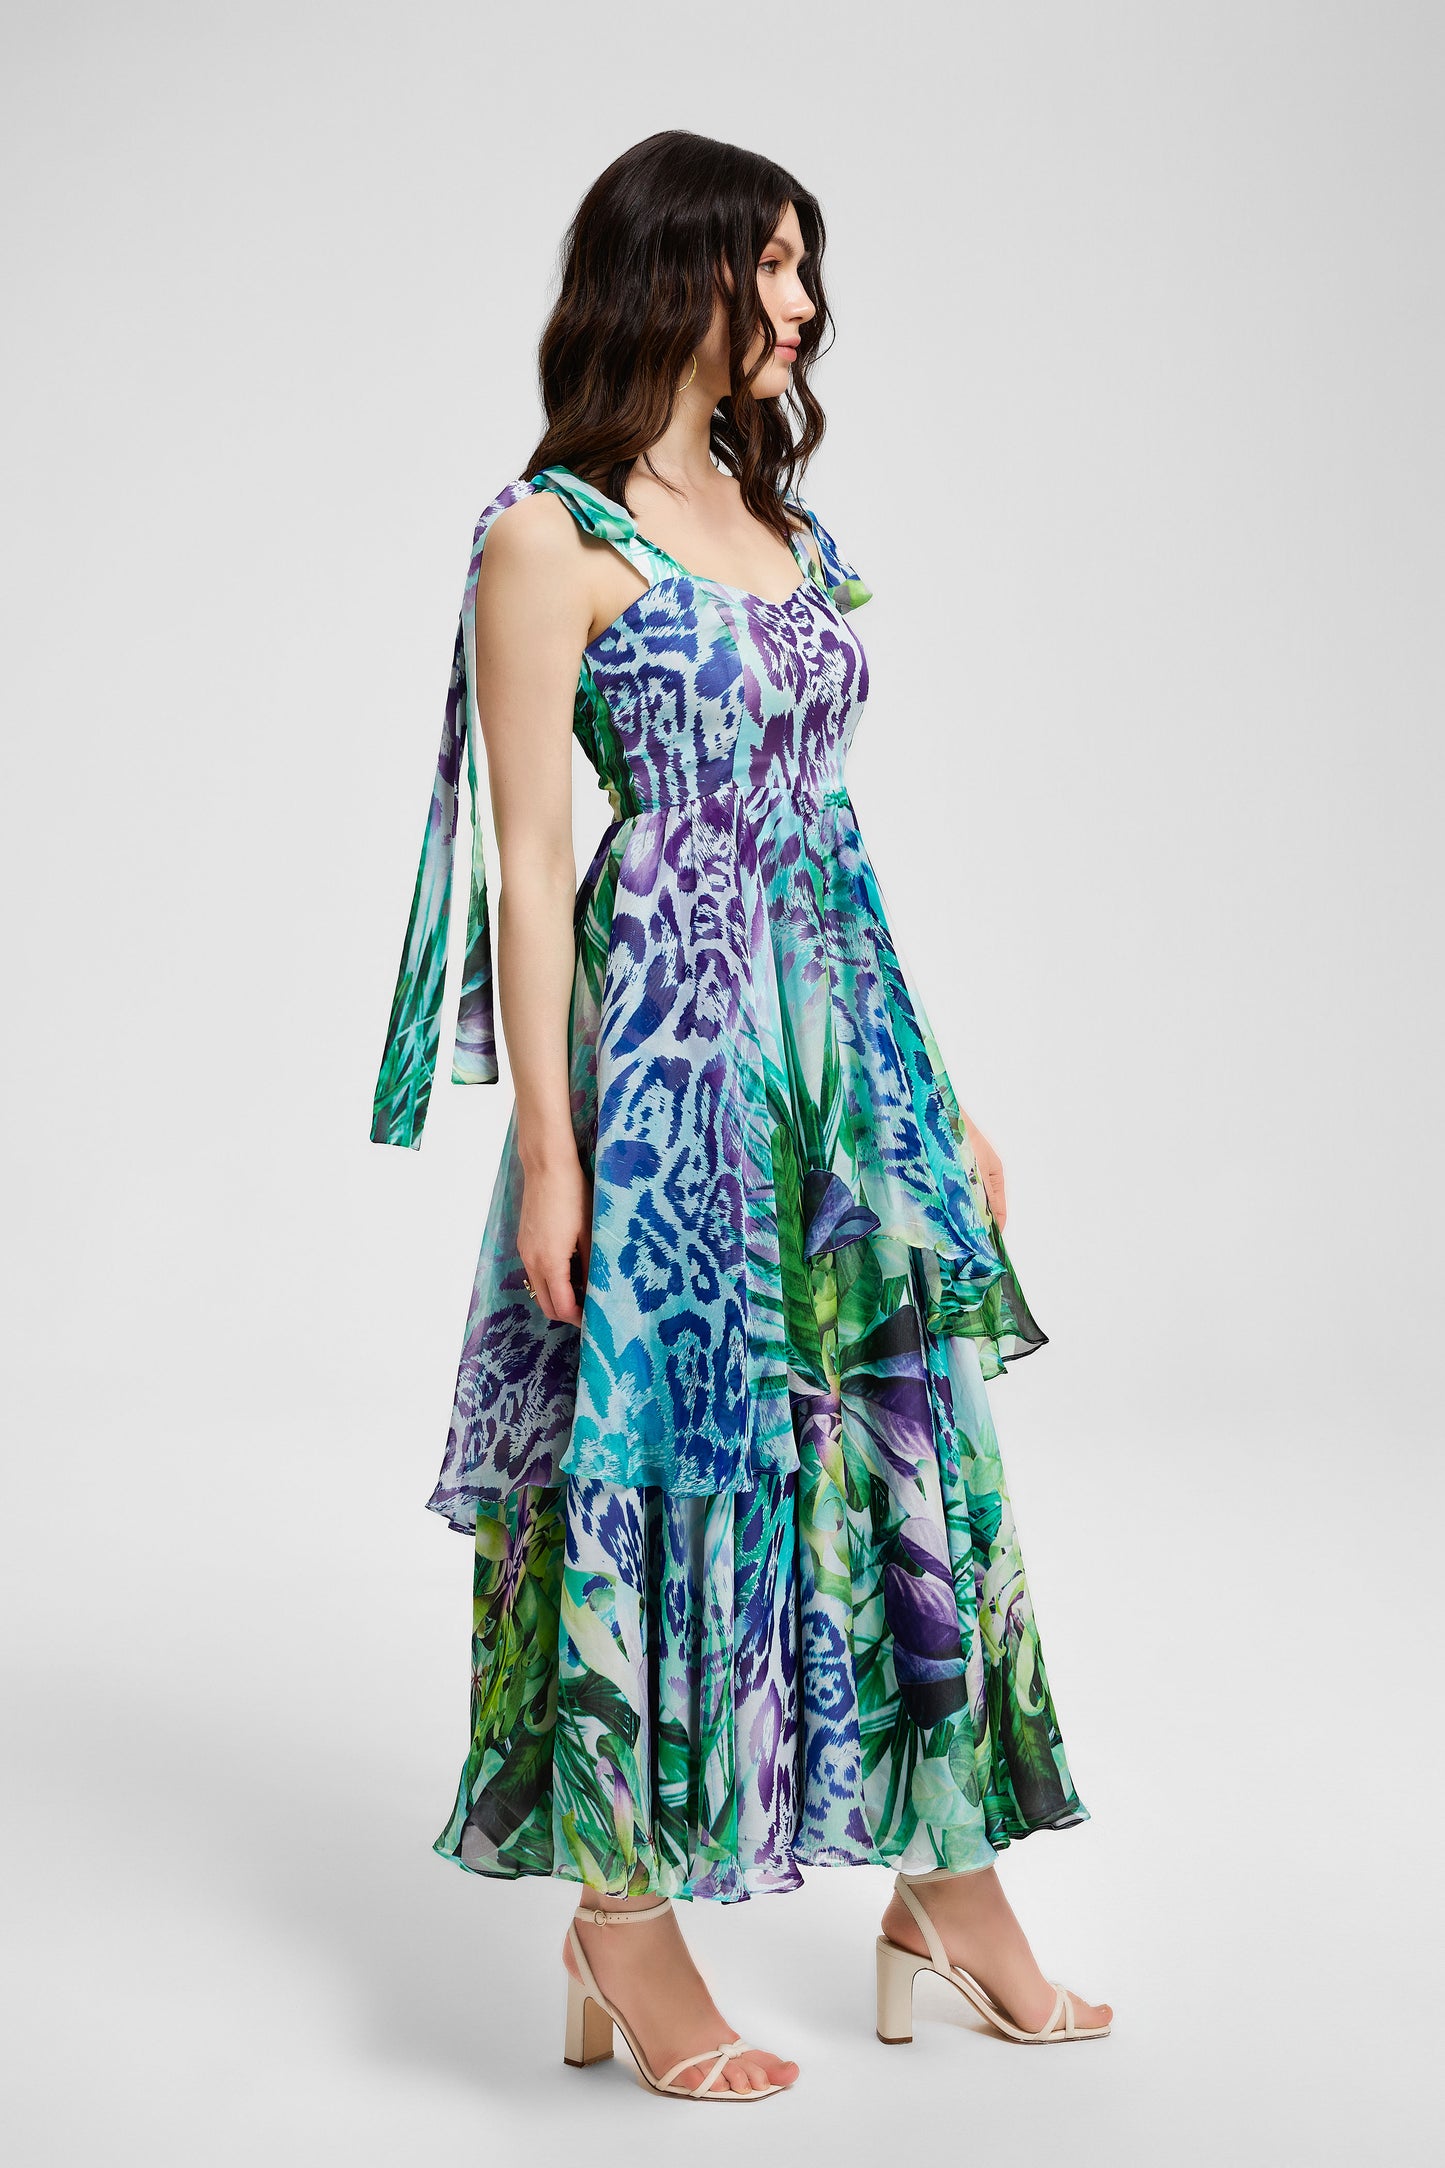 
                  
                    Silk - Chiffon Layered Dress
                  
                